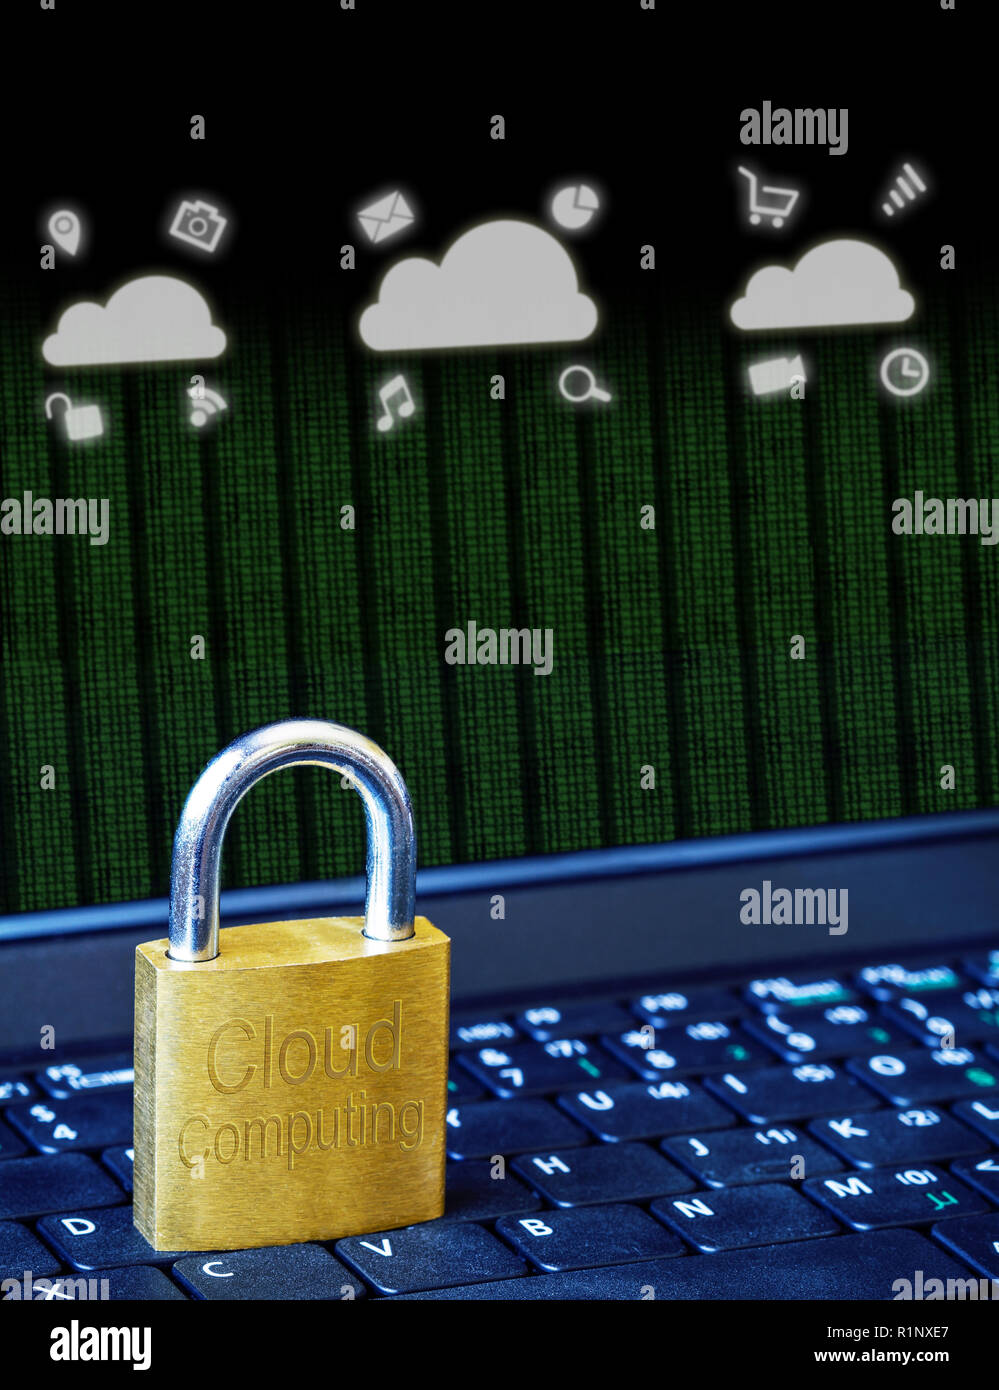 Goldene Vorhängeschloss auf dem Computer Laptop Tastatur mit Cloud Computing Symbole und binäre Daten. Konzept der Internet Security, Datenschutz, Cyberkriminalität preventi Stockfoto